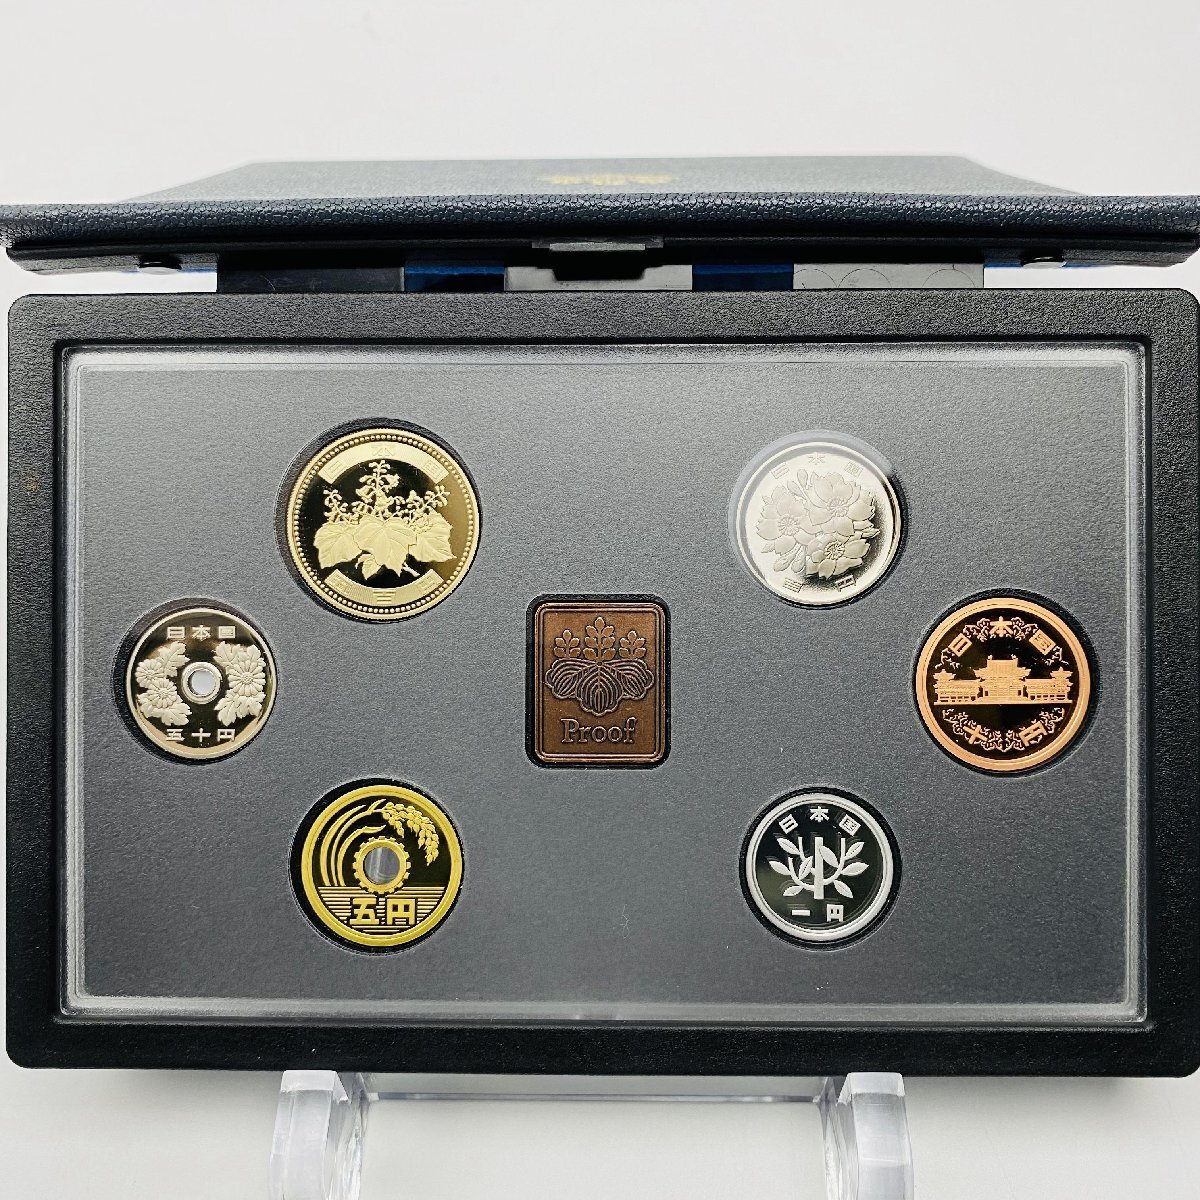 2003年 平成15年 通常プルーフ貨幣セット 額面666円 年銘板有 全揃い 記念硬貨 記念貨幣 貨幣組合 日本円 限定貨幣 コレクション P2003_画像2